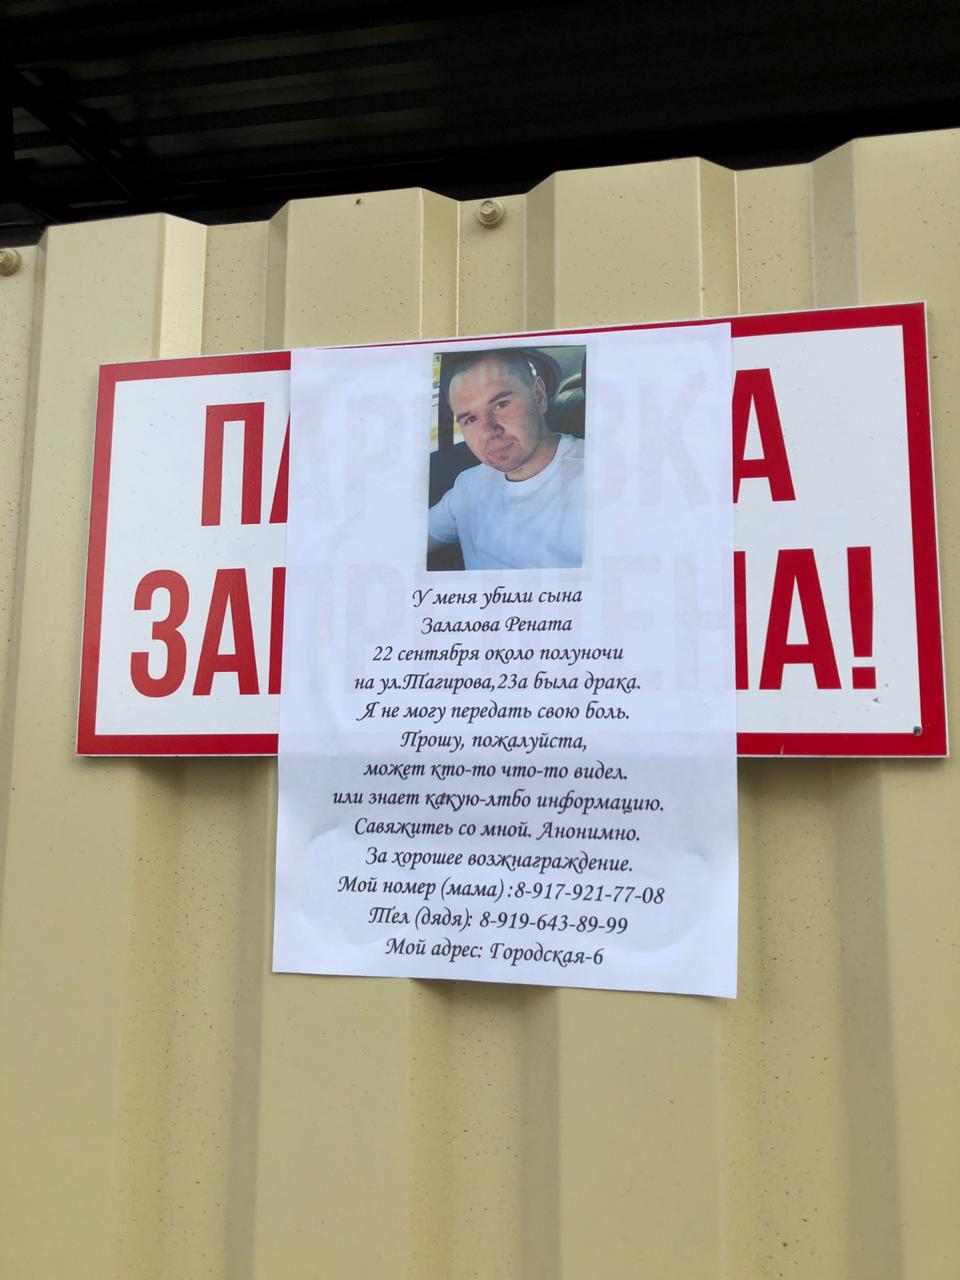 Следственный комитет по Татарстану начал проверку по факту смерти молодого человека в Альметьевске